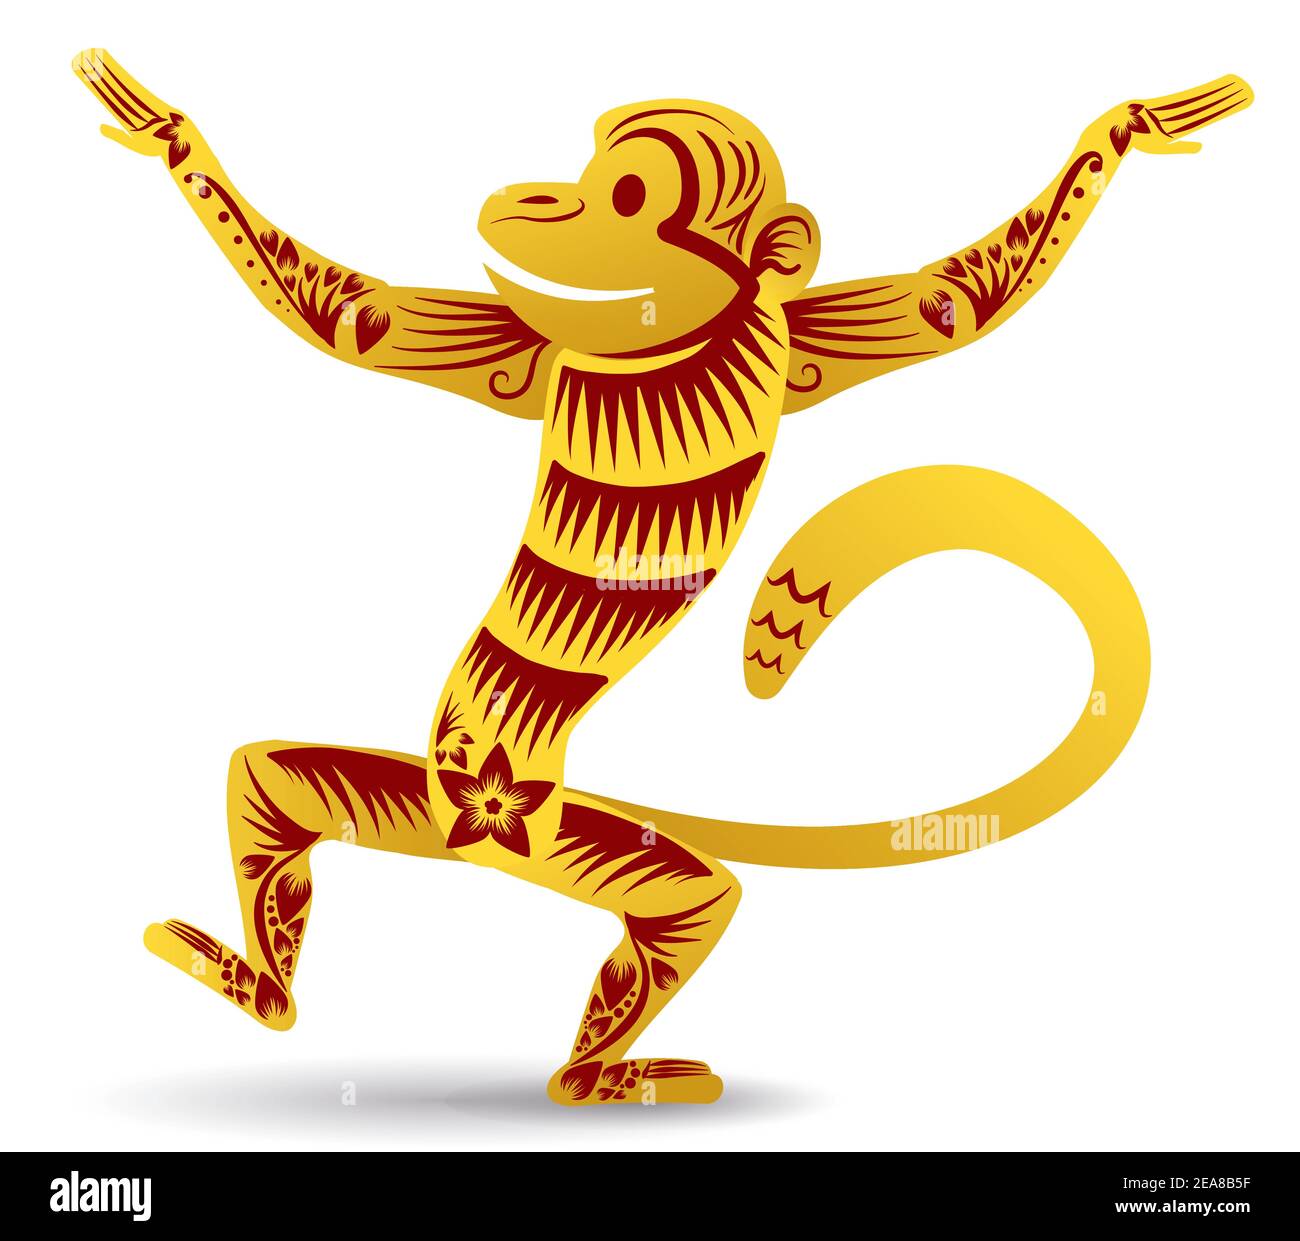 Scimmia dorata isolata a braccia aperte in stile cinese, che rappresenta questo animale zodiaco nella cultura orientale. Illustrazione Vettoriale